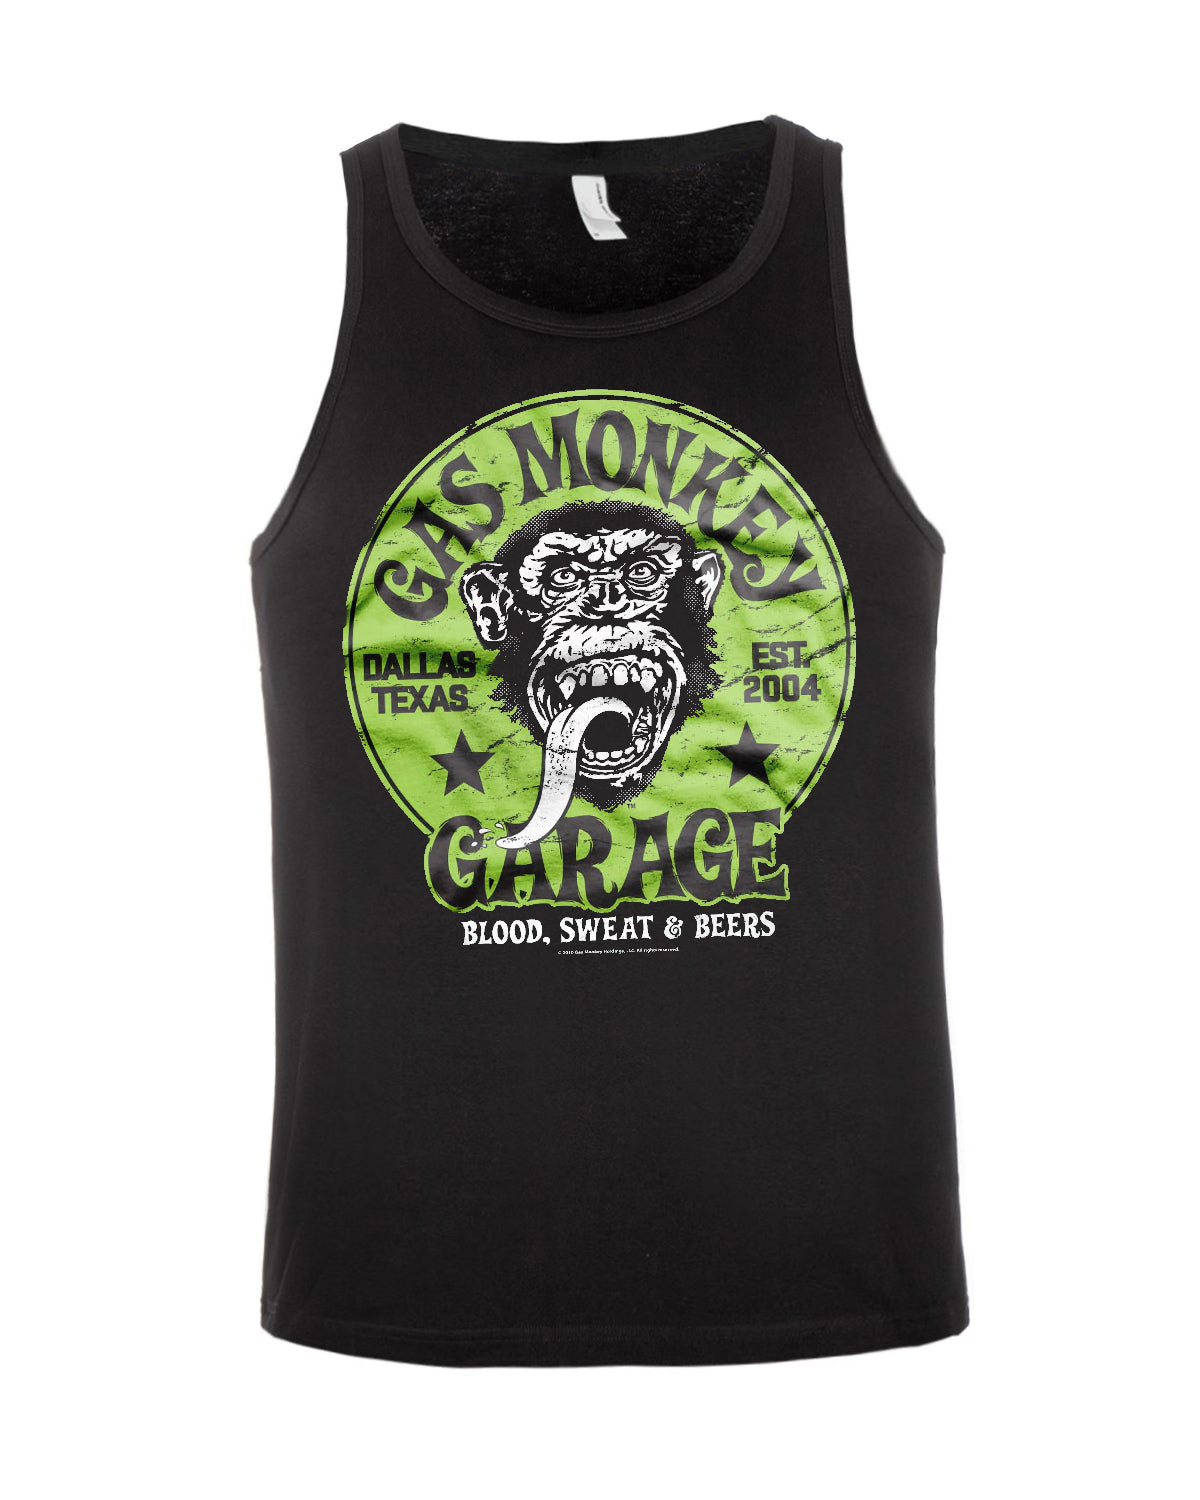 Print Shirt Gas monkey hihaton - Musta/Vihreä